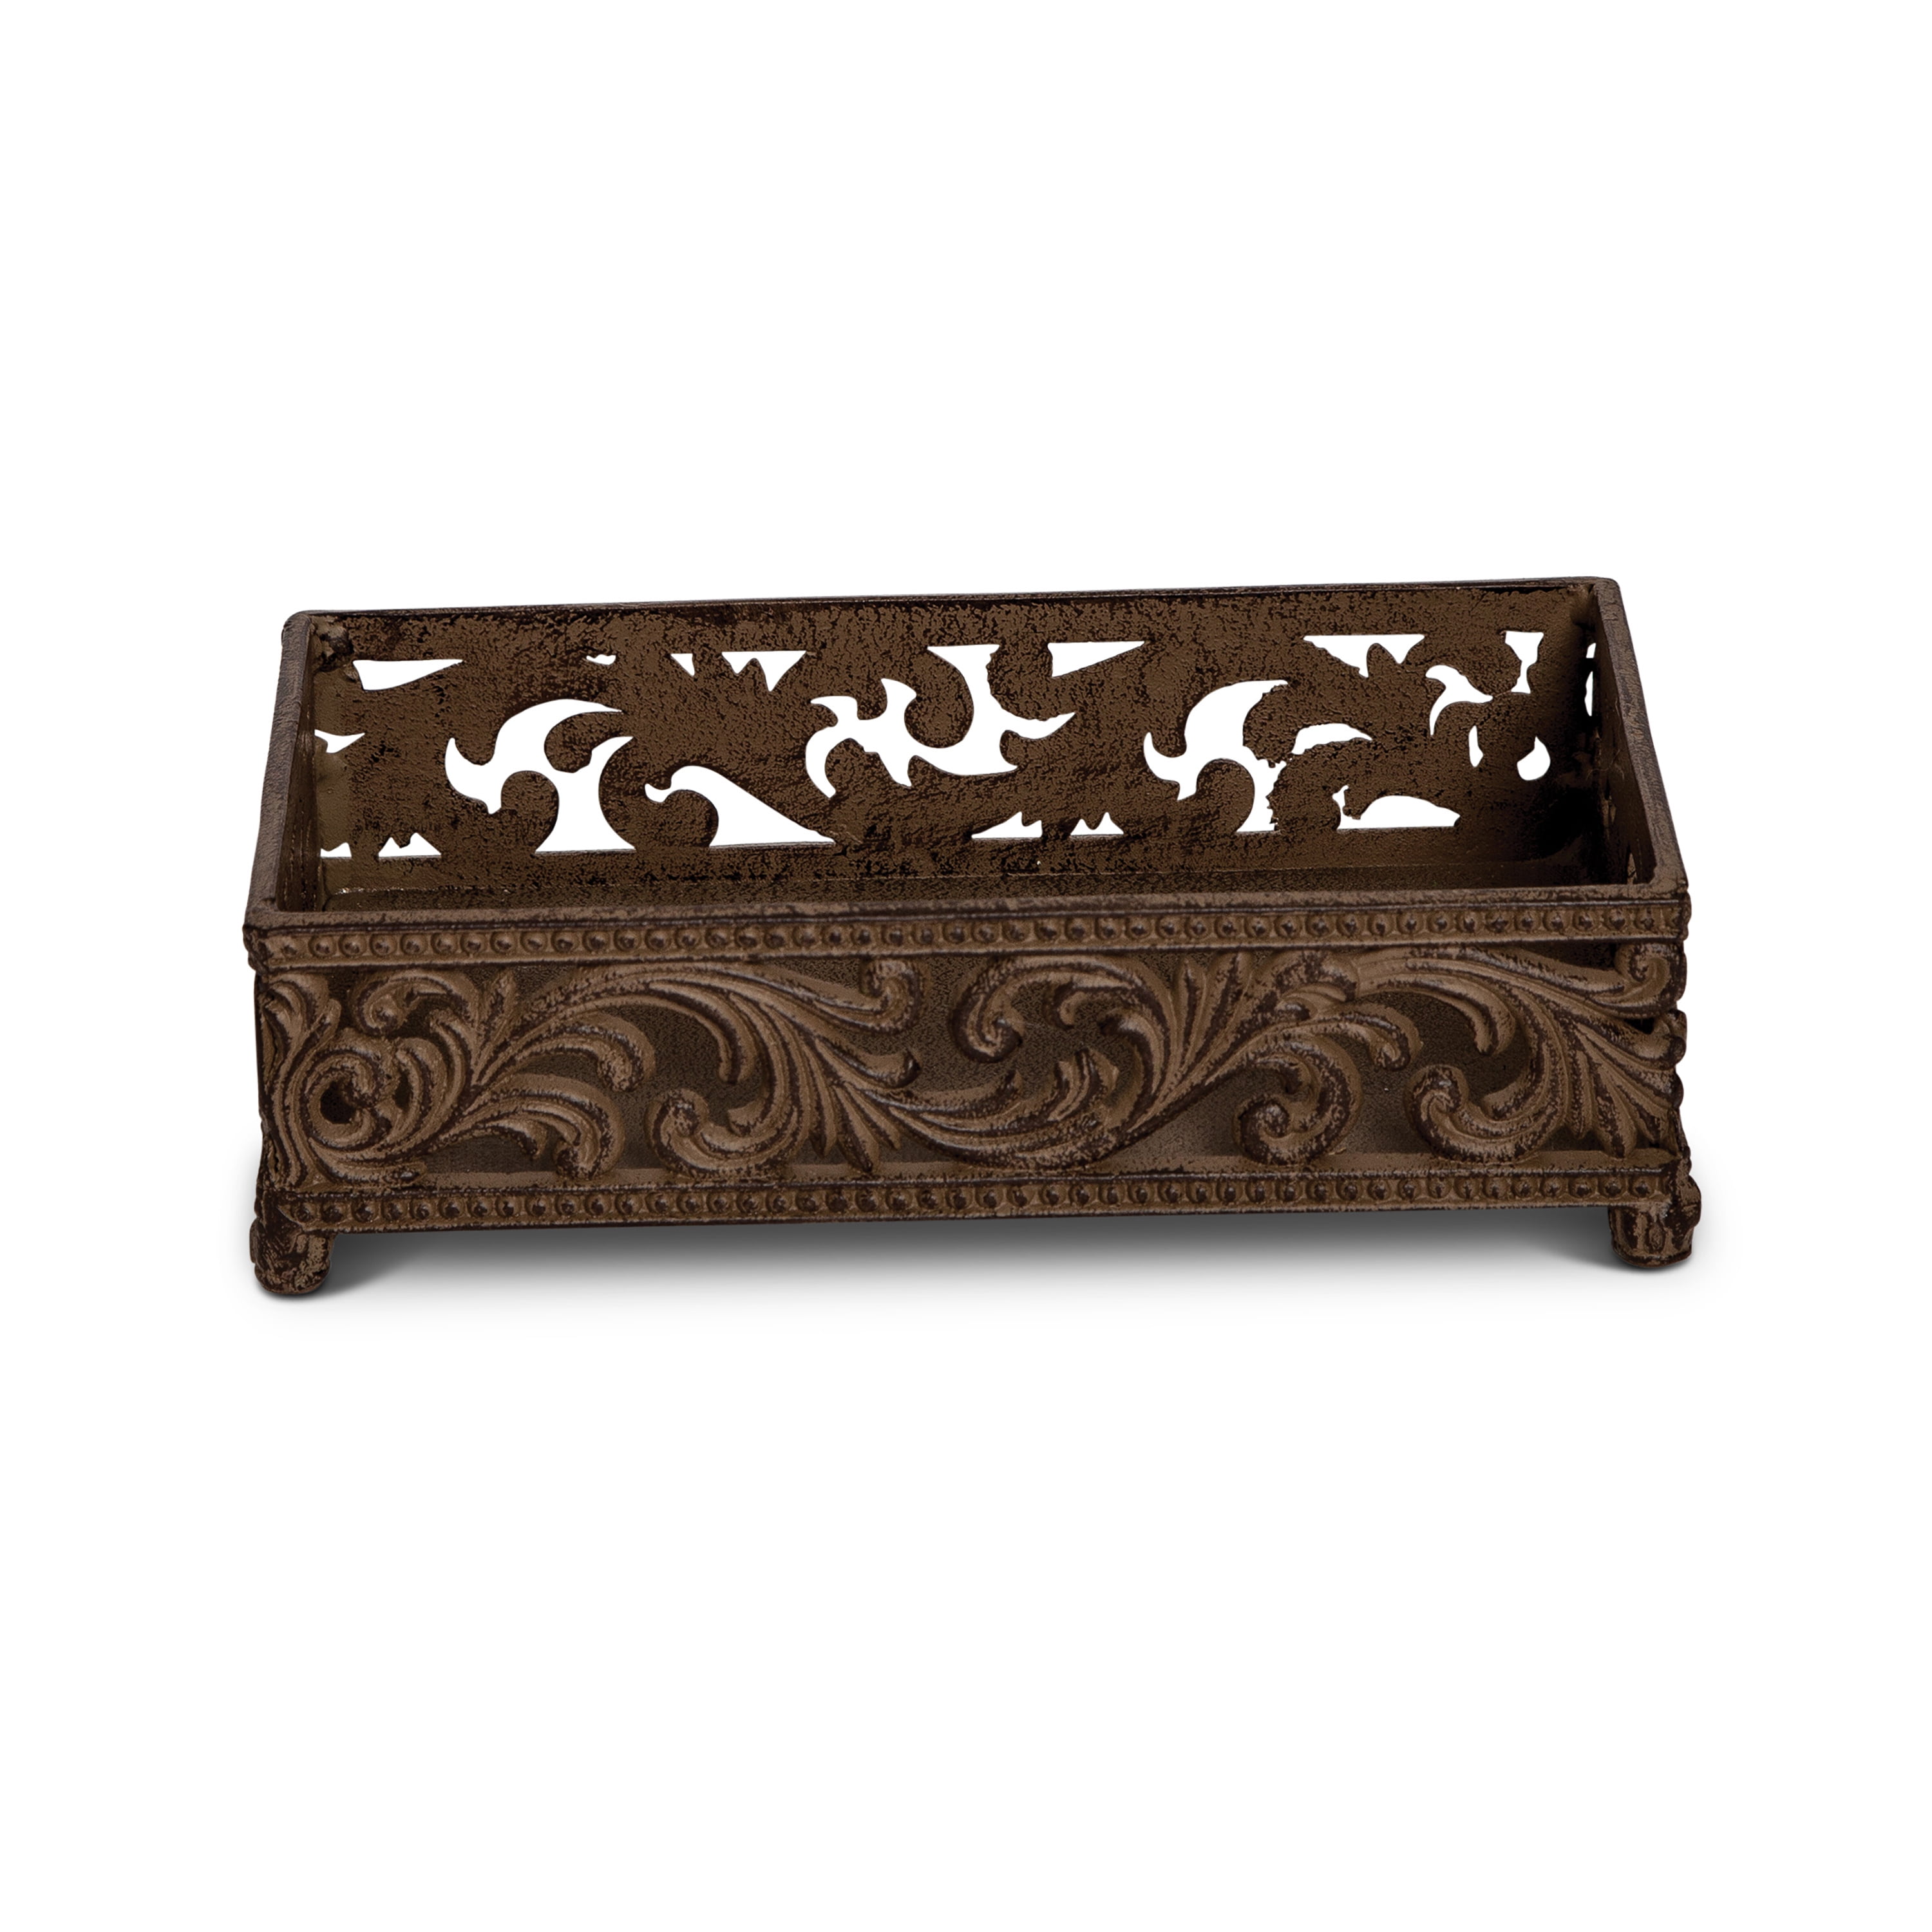 Guest Towel Holder Wood Black/Gold – Paperproducts Design